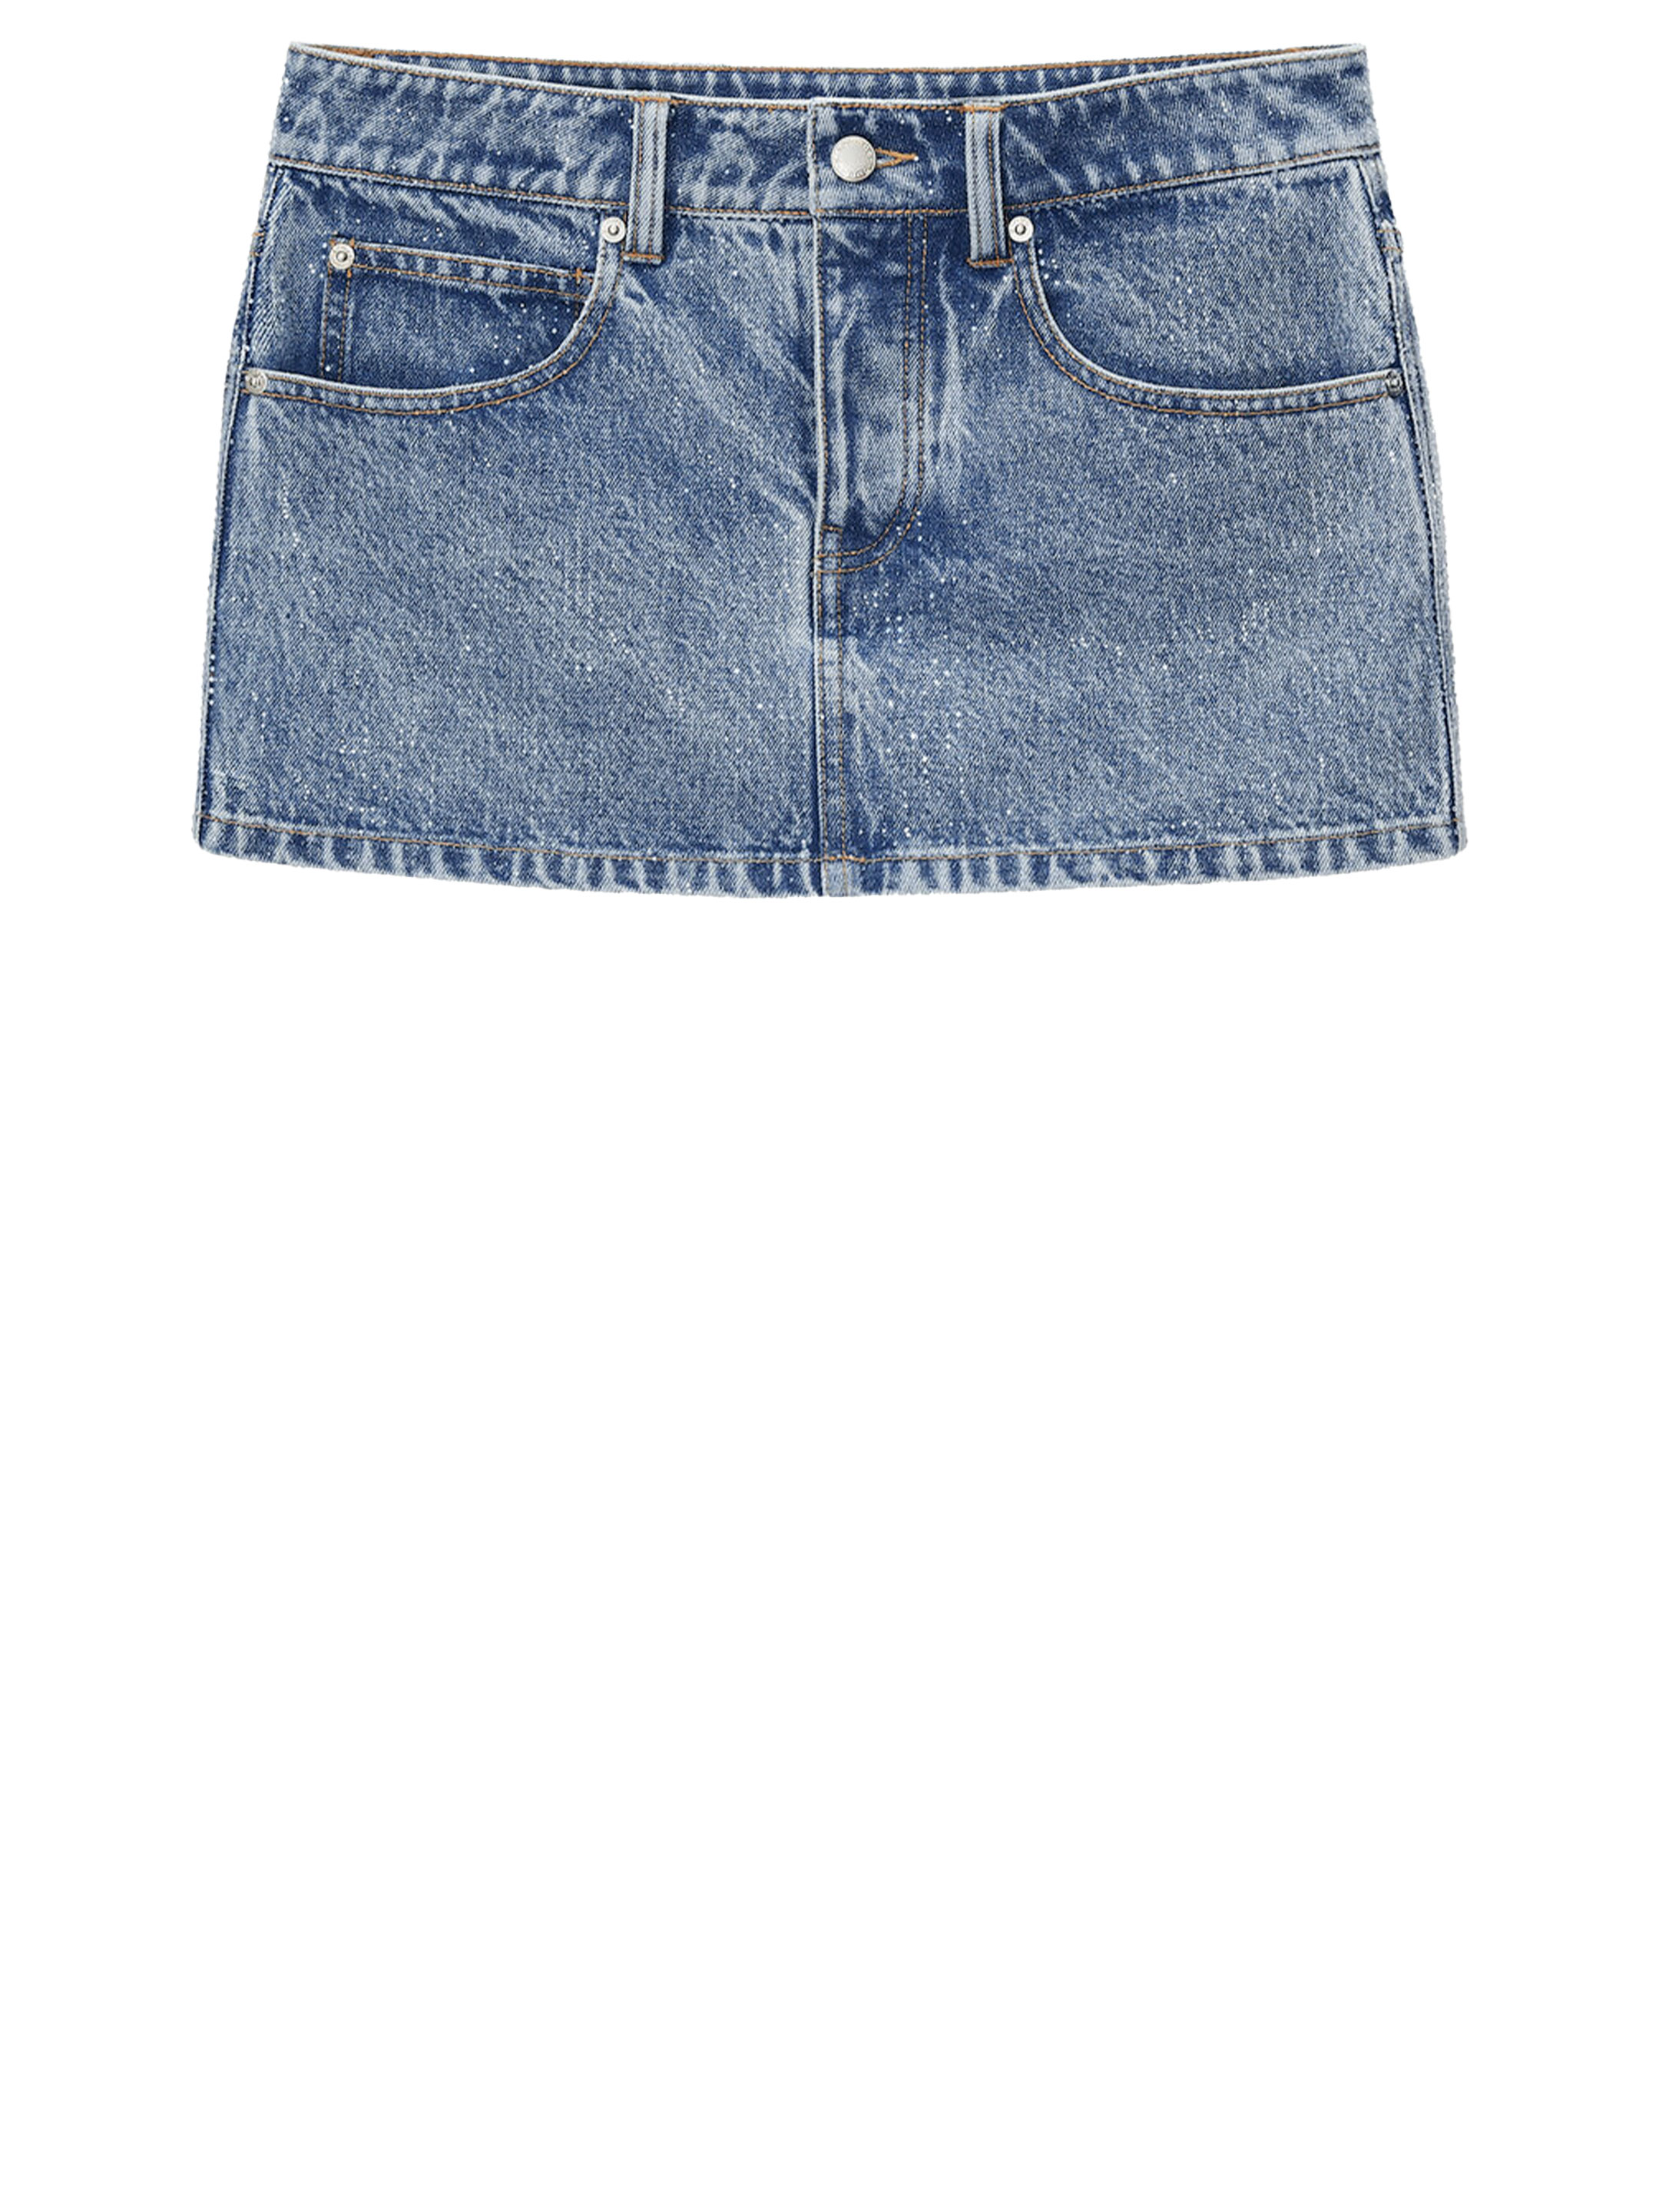 светлая джинсовая мини юбка tommy jeans с логотипом по всей поверхности Мини юбка Alexander Wang Denim, синий